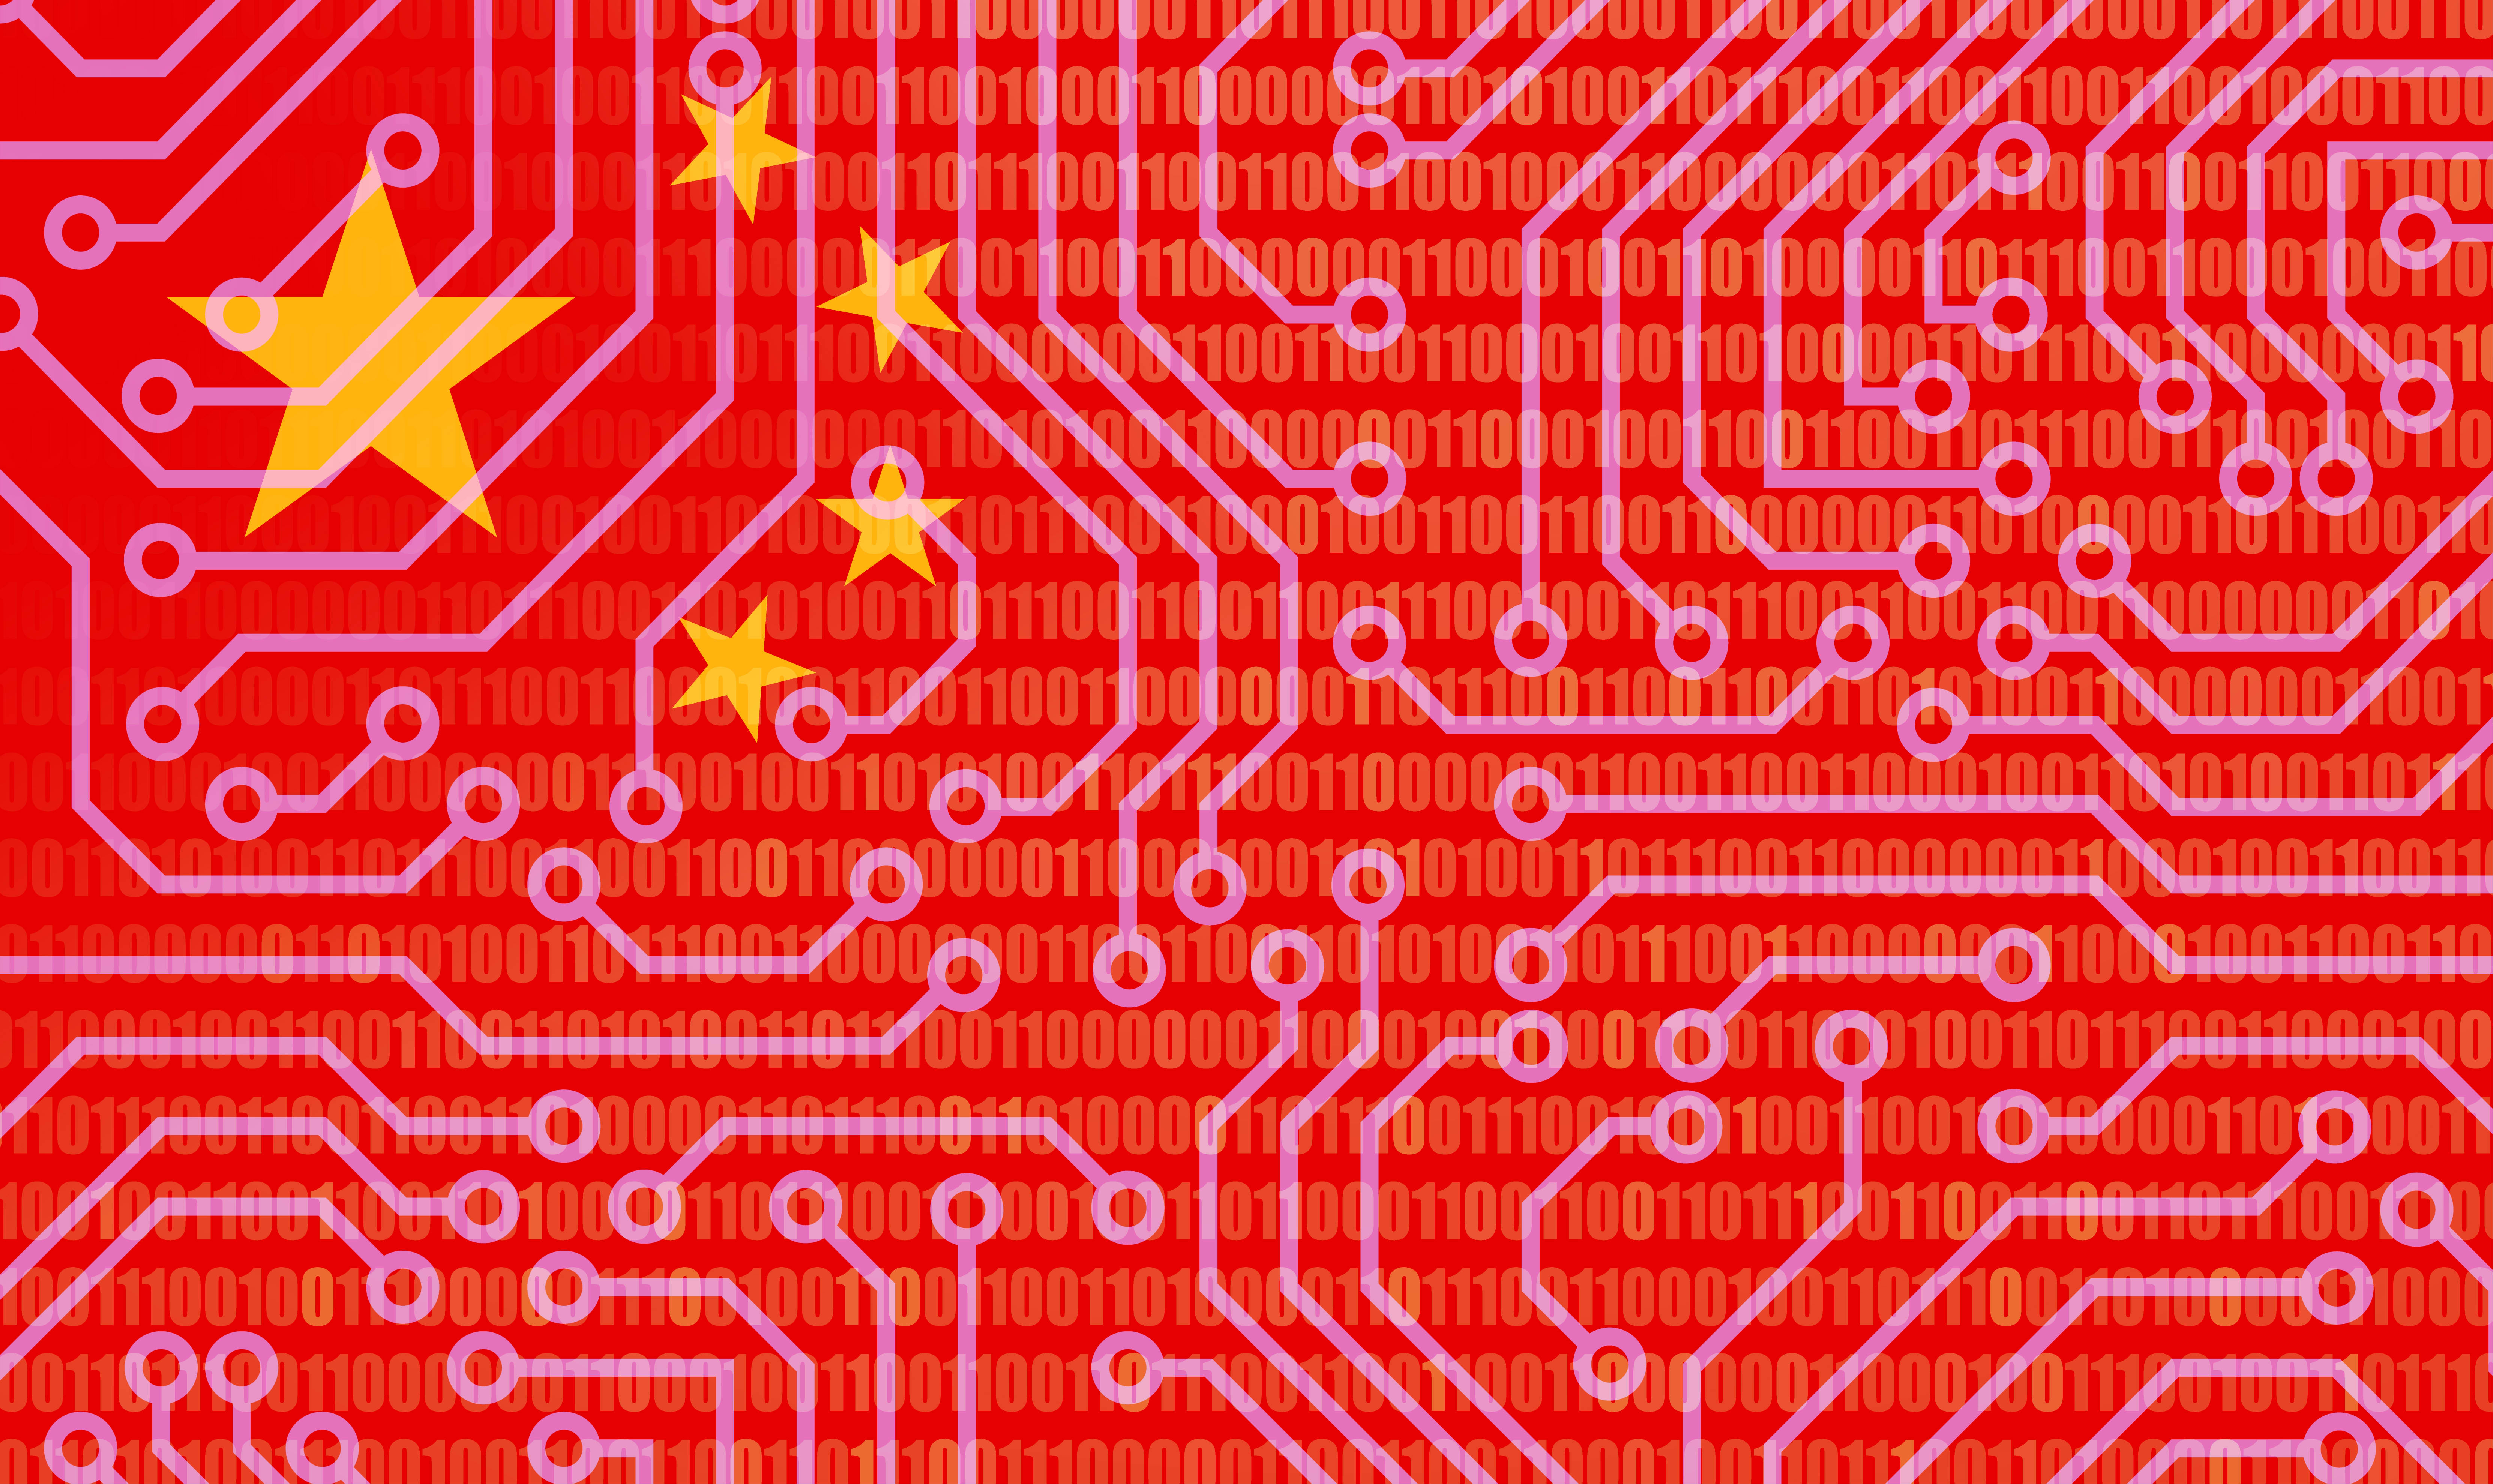 Les géants chinois de la technologie Alibaba et Tencent ont investi dans la startup Zhipu, concurrente d'OpenAI.